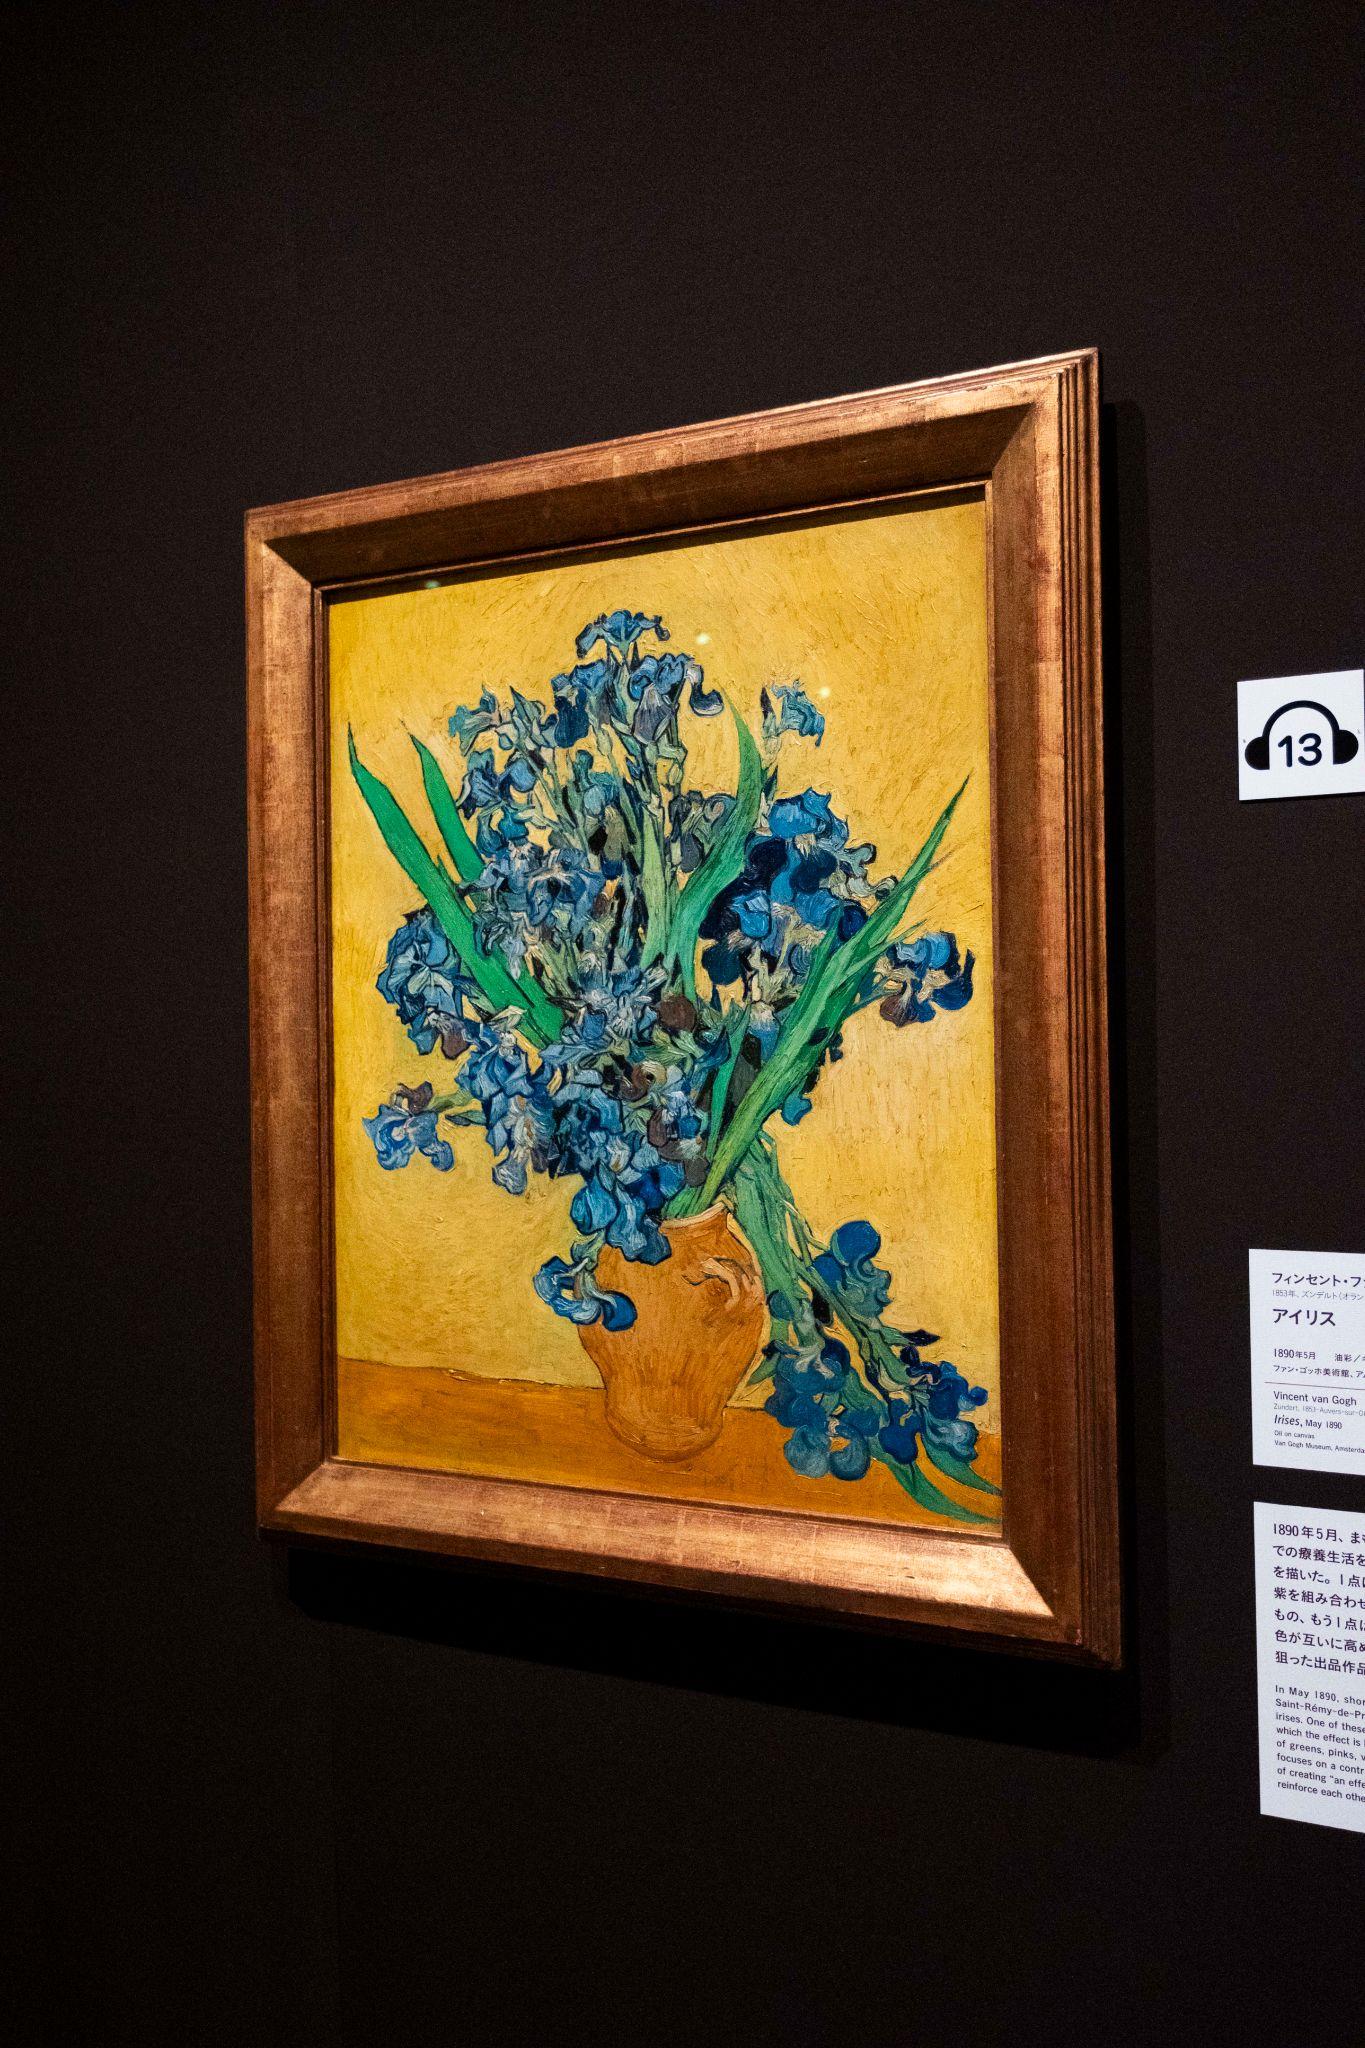 ゴッホと静物画―伝統から革新へ』 SOMPO美術館 「きものでミュージアム 